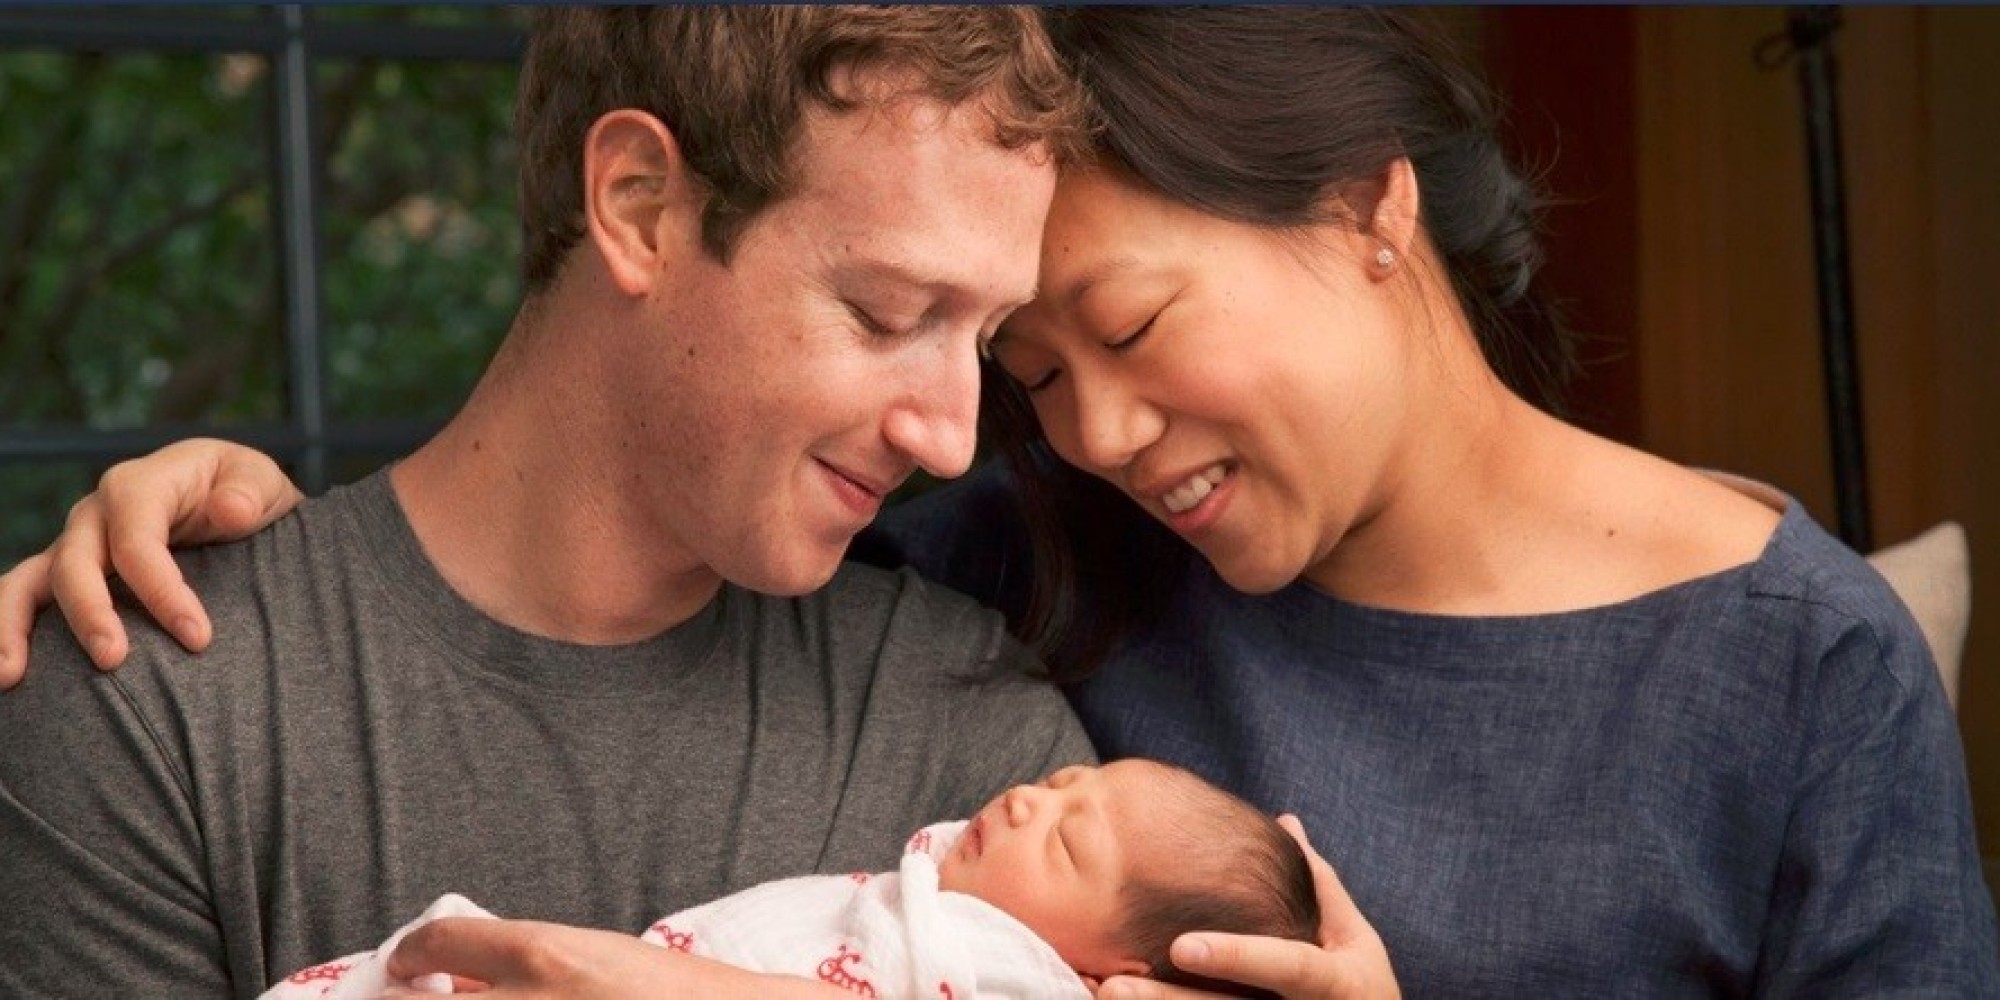 Mark Zuckerberg anuncia que vai doar 99% de sua fortuna para a caridade